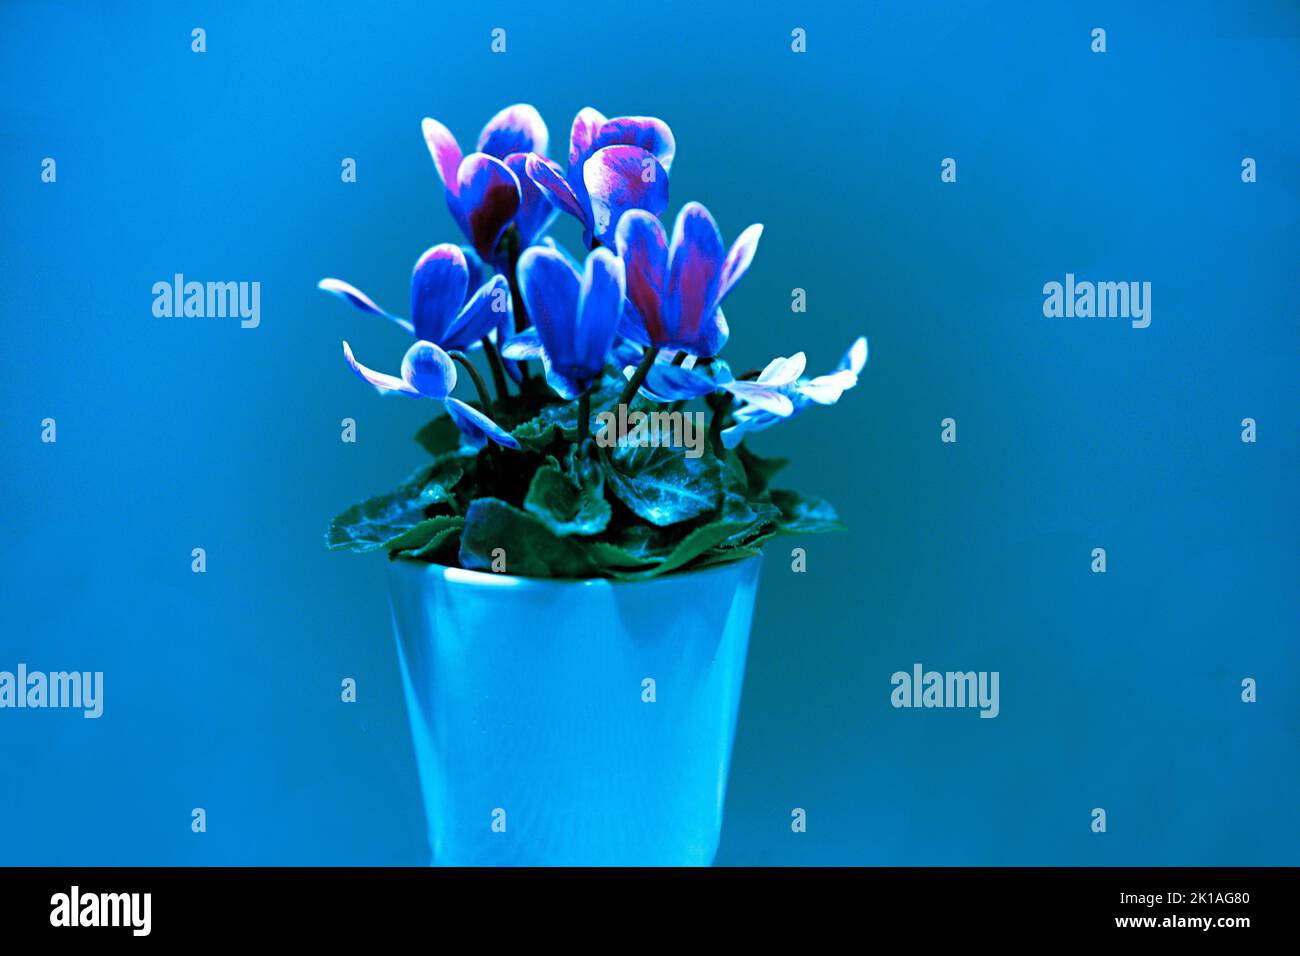 Alpenveilchen einzelner Blumenstock mit verschiedenen Farbnuacen grün, hellblau, blau, rosa, gosaschwarz, vielett, braun, Foto Stock